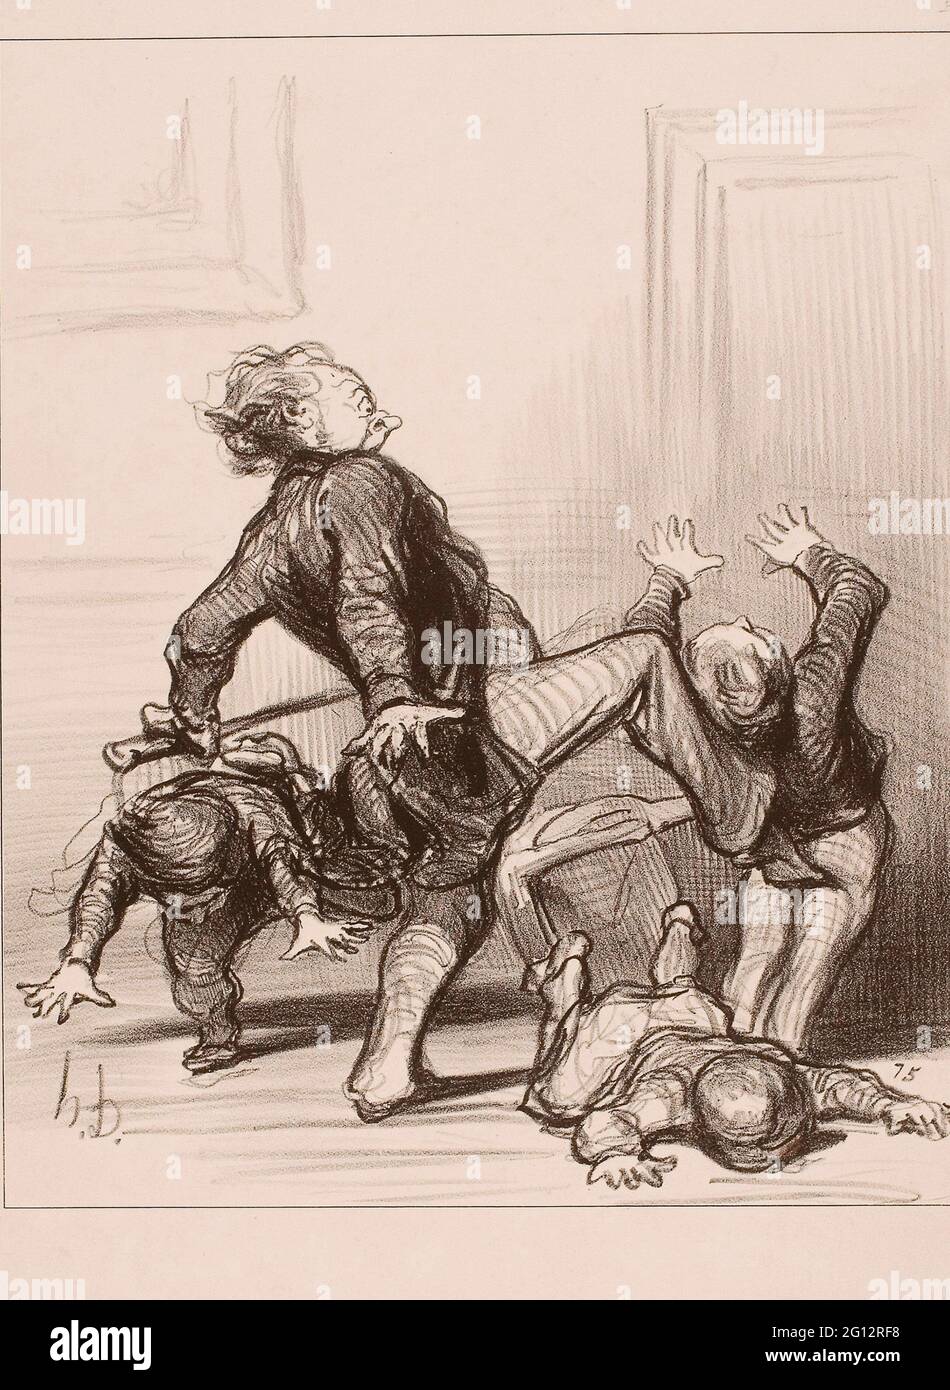 Honor-Victorin Daumier. L'influenza del Congresso della pace: OOH, si scudisole, si sta combattendo di nuovo, si continua a non sapere che l'uomo dovrebbe vivere Foto Stock